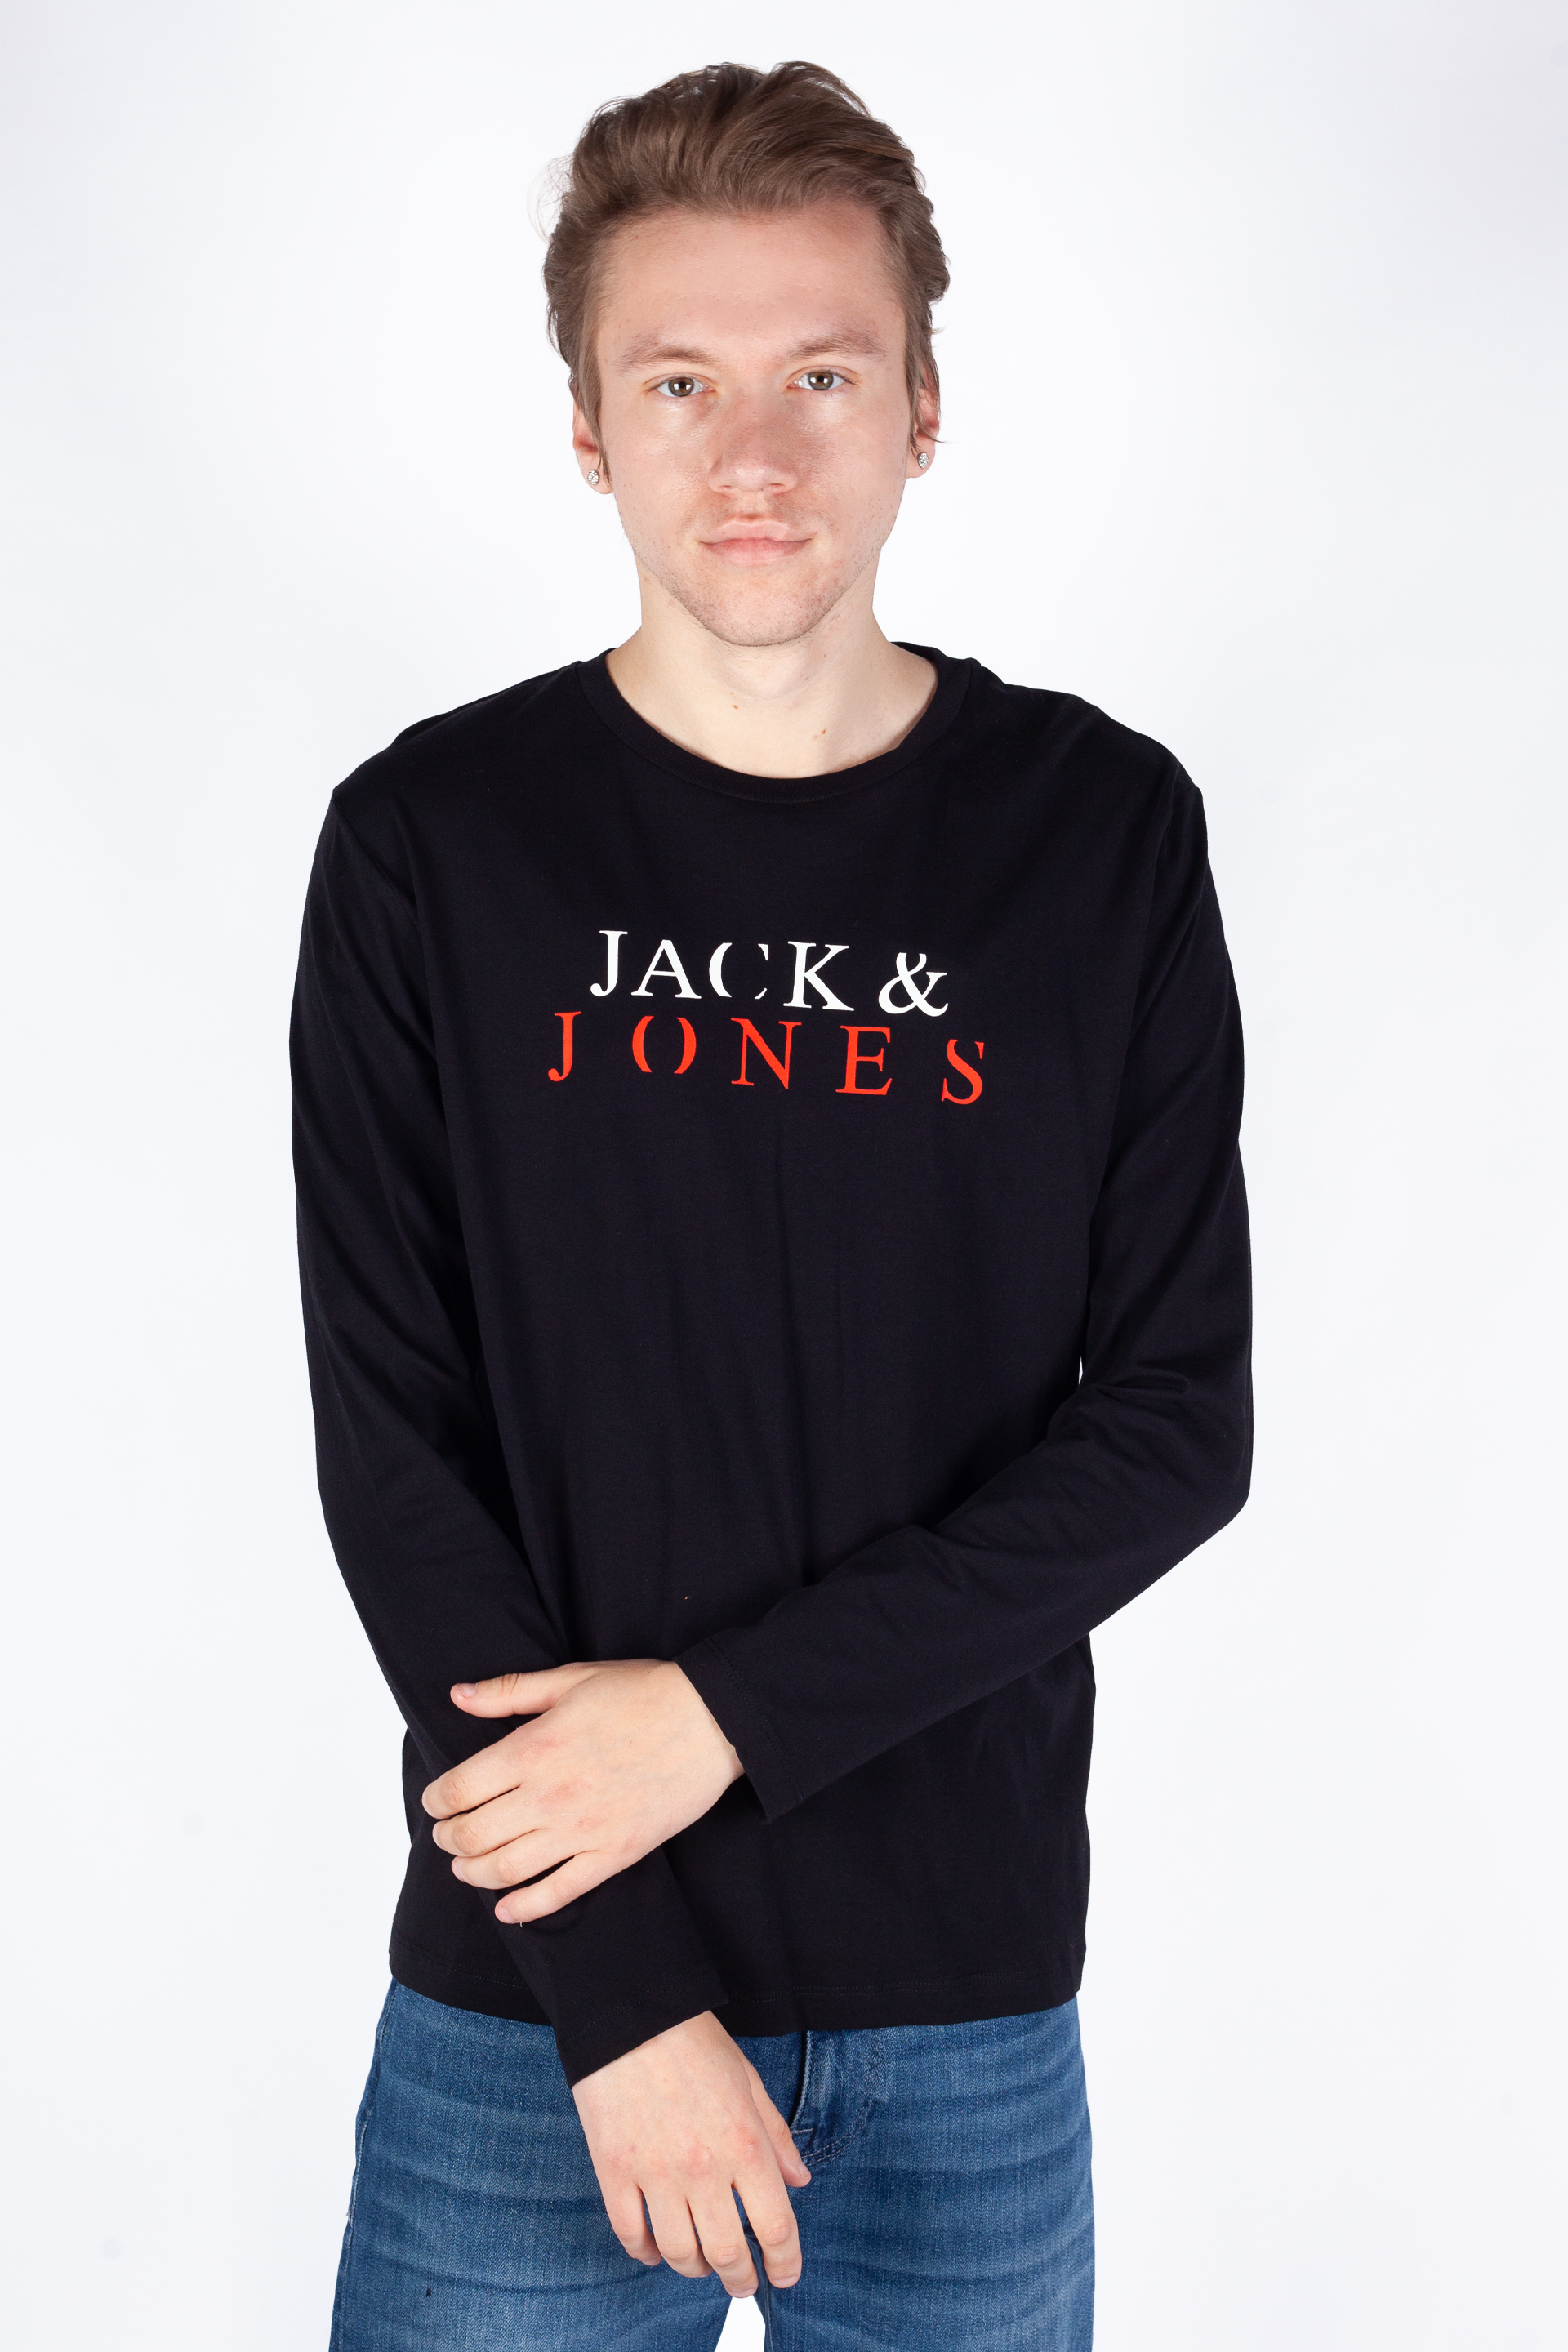 Pikkade käistega T-särgid  JACK & JONES 12244403-Black